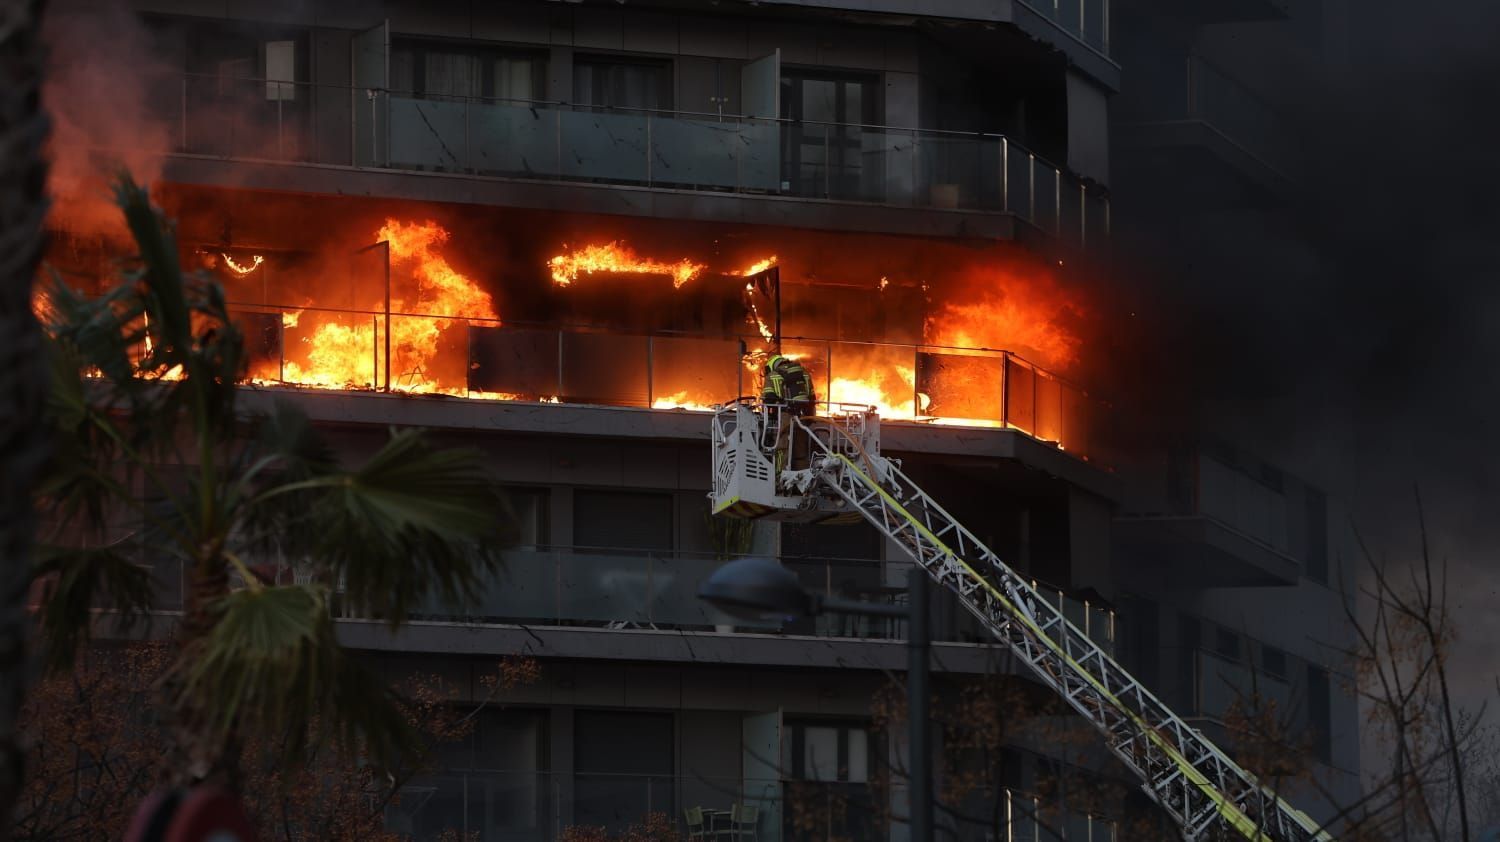 Bilder des Großbrandes in einem Wohnblock in Valencia